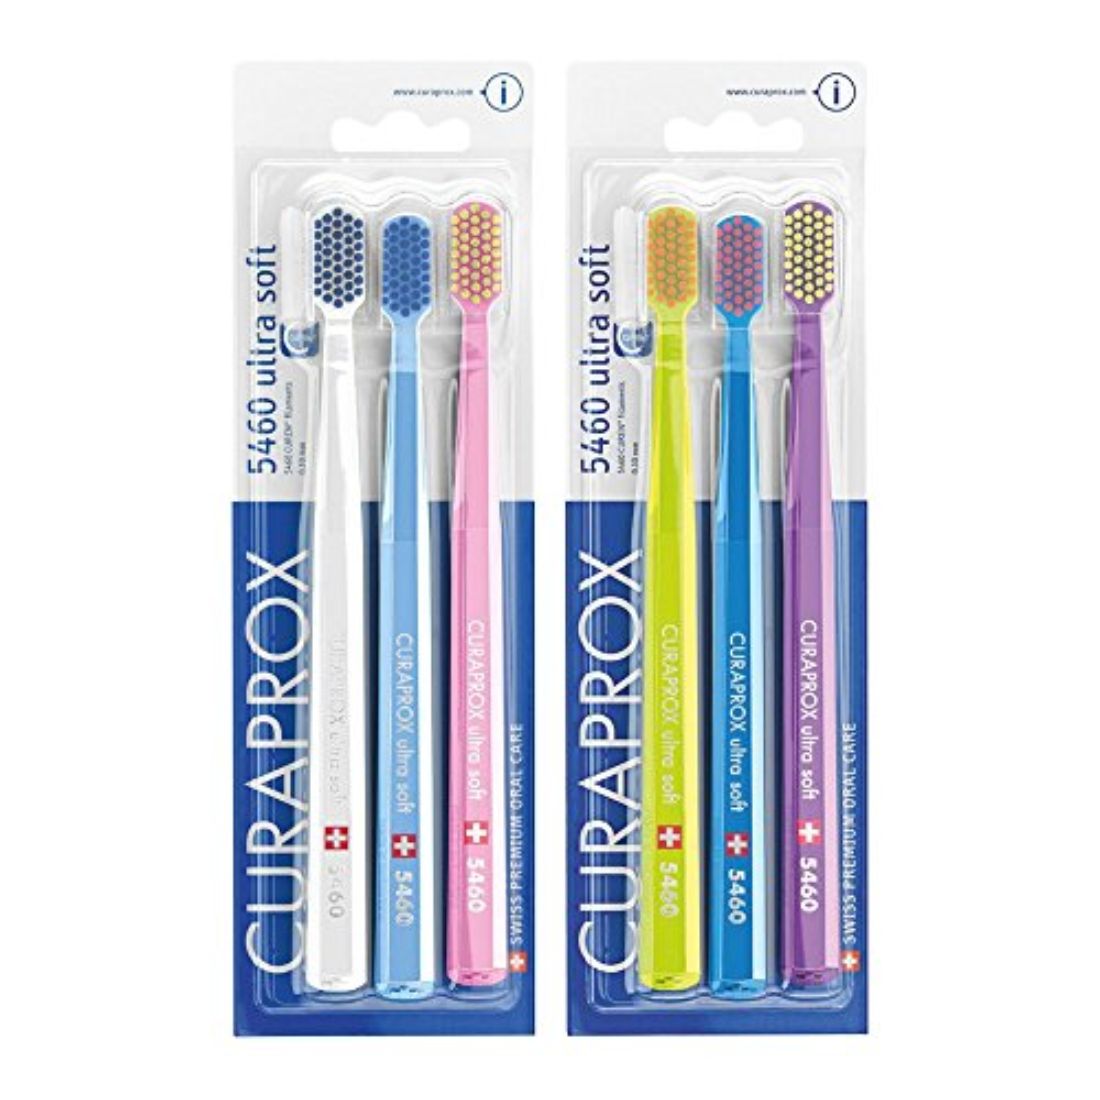 Buy Curaprox 5460 Ultrasoft Toothbrush, 6 Pack Online in UAE